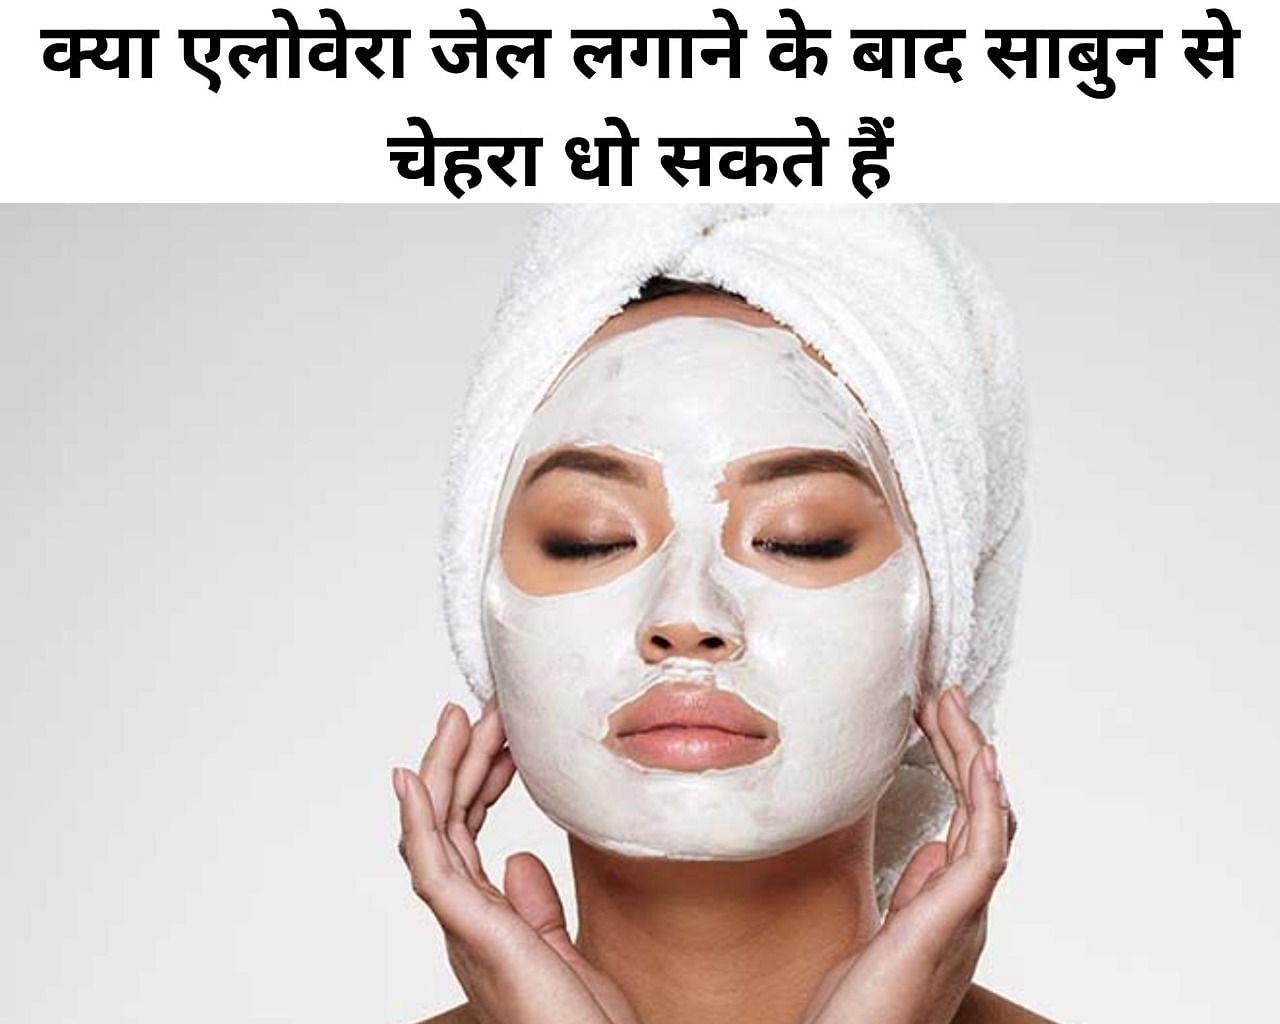 क्या एलोवेरा जेल लगाने के बाद साबुन से चेहरा धो सकते हैं (फोटो - sportskeeda hindi)